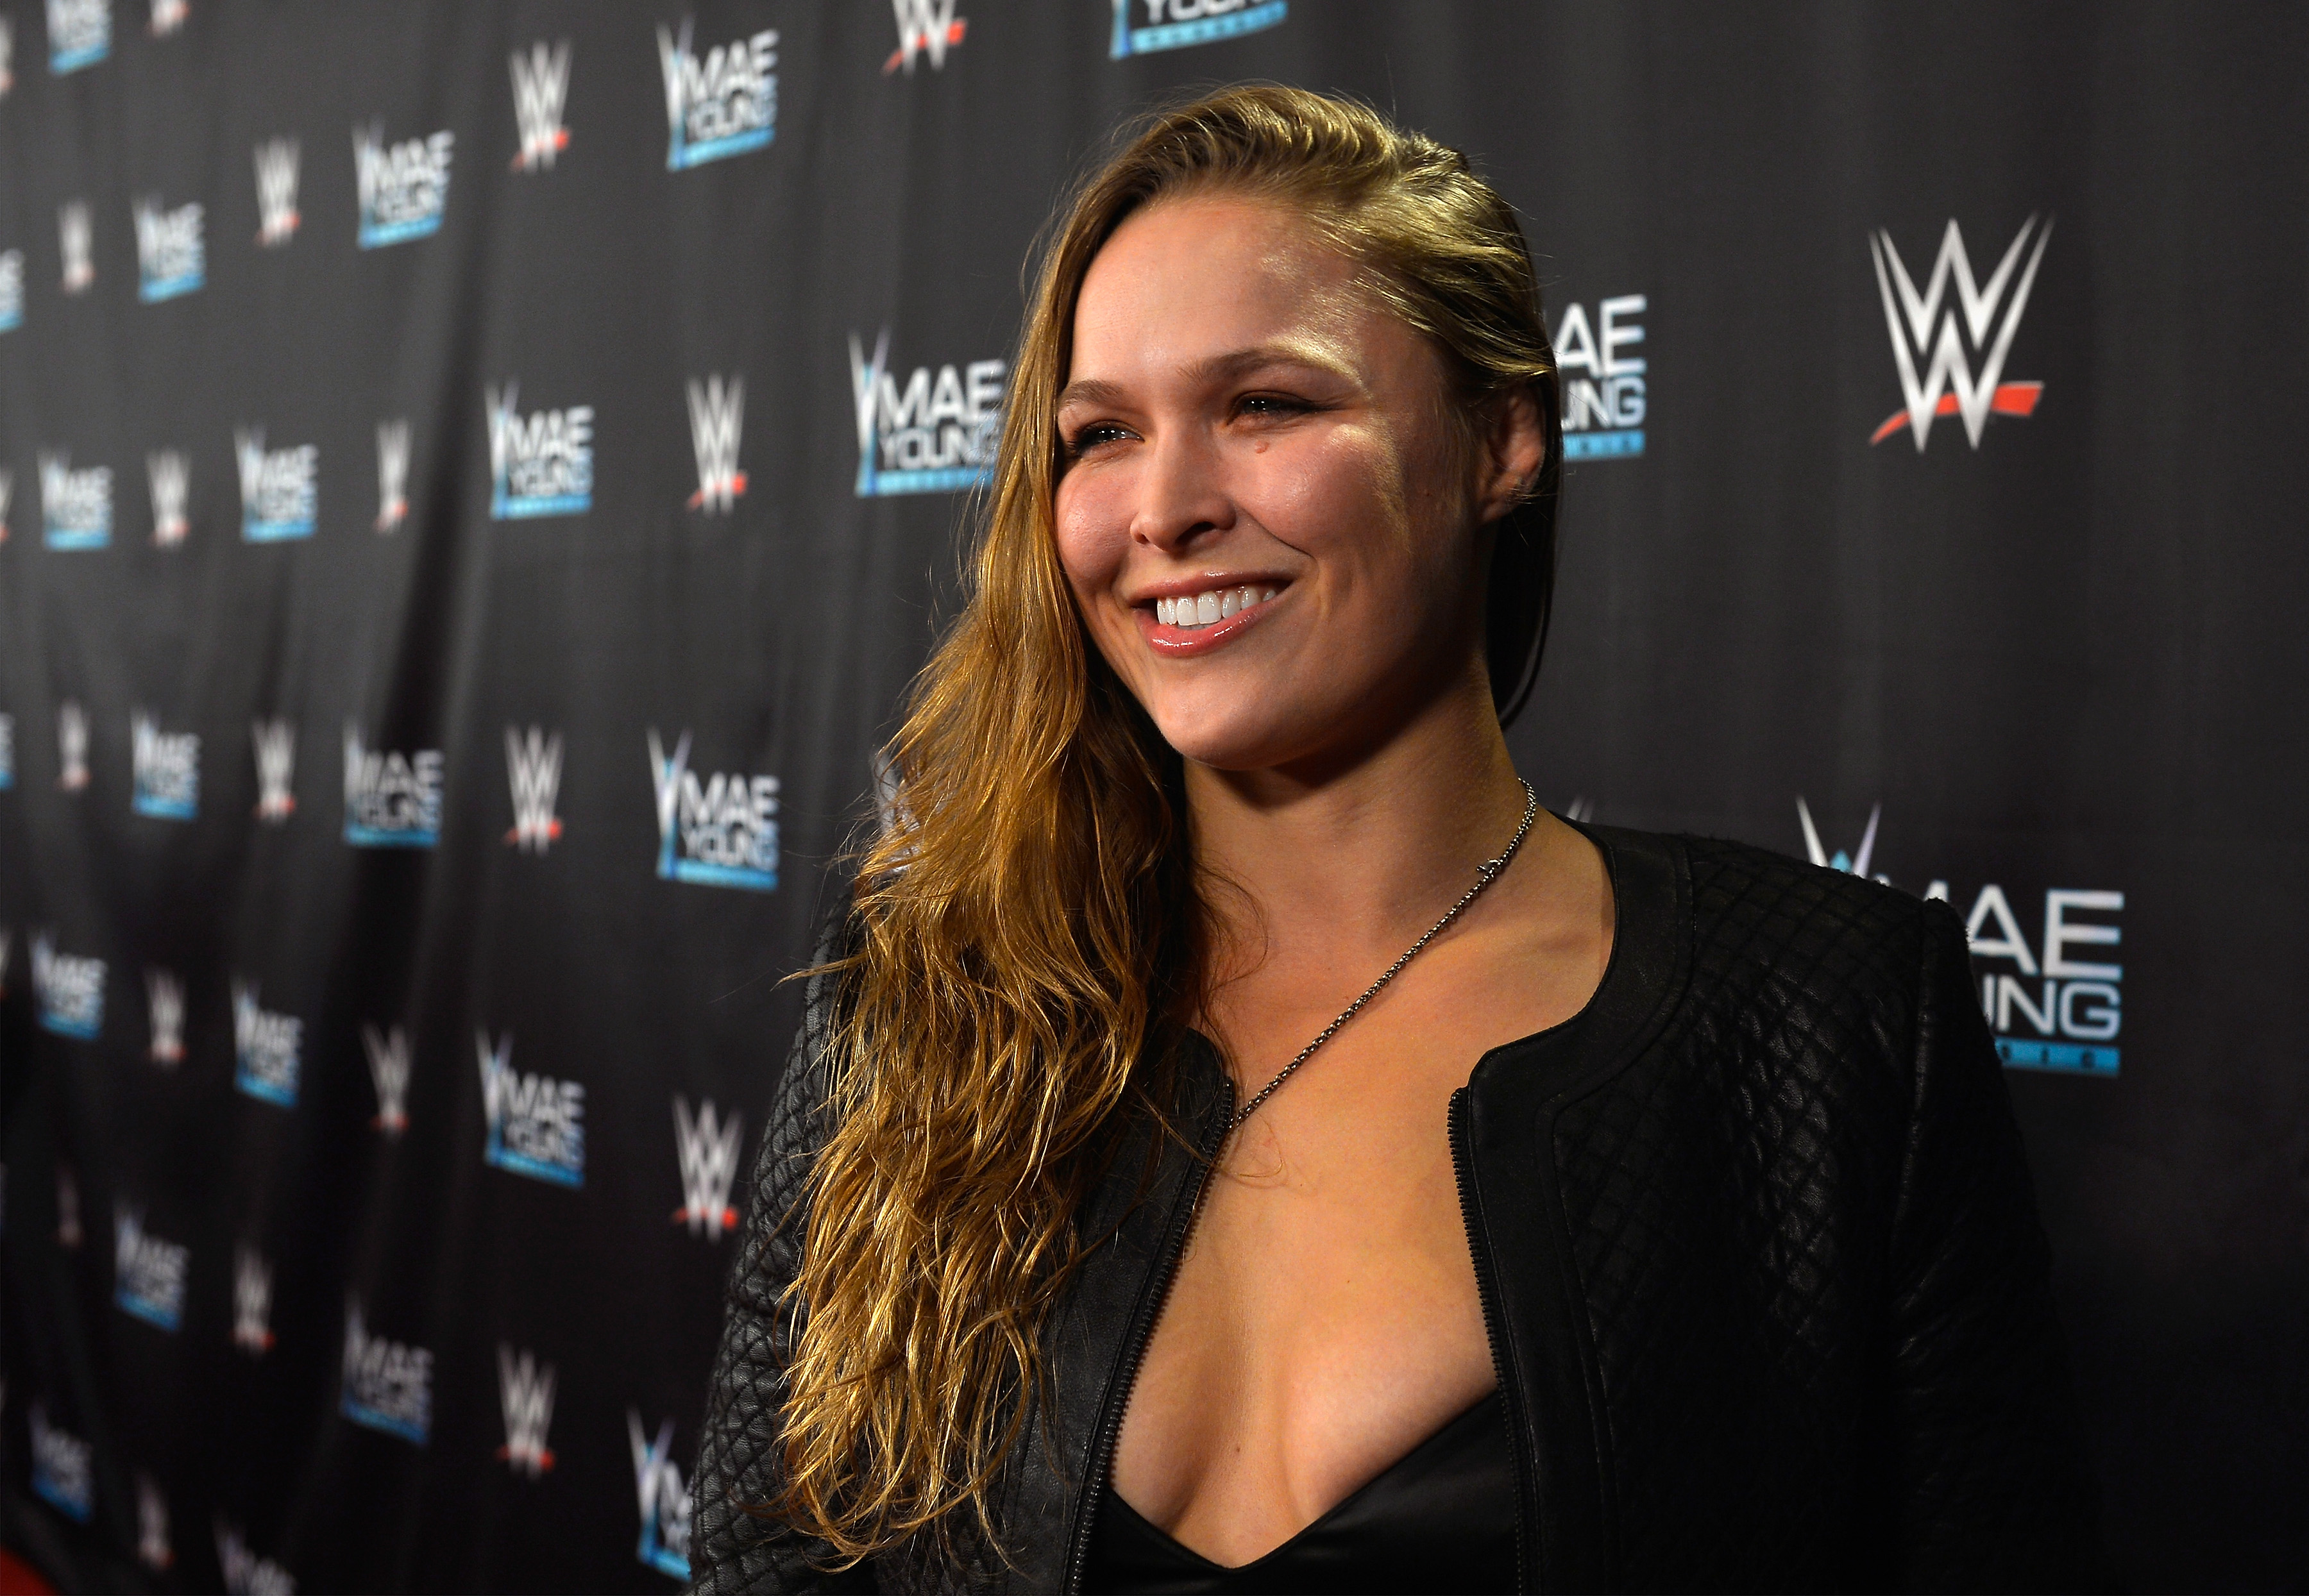 Will Ronda Rousey Return to WWE?